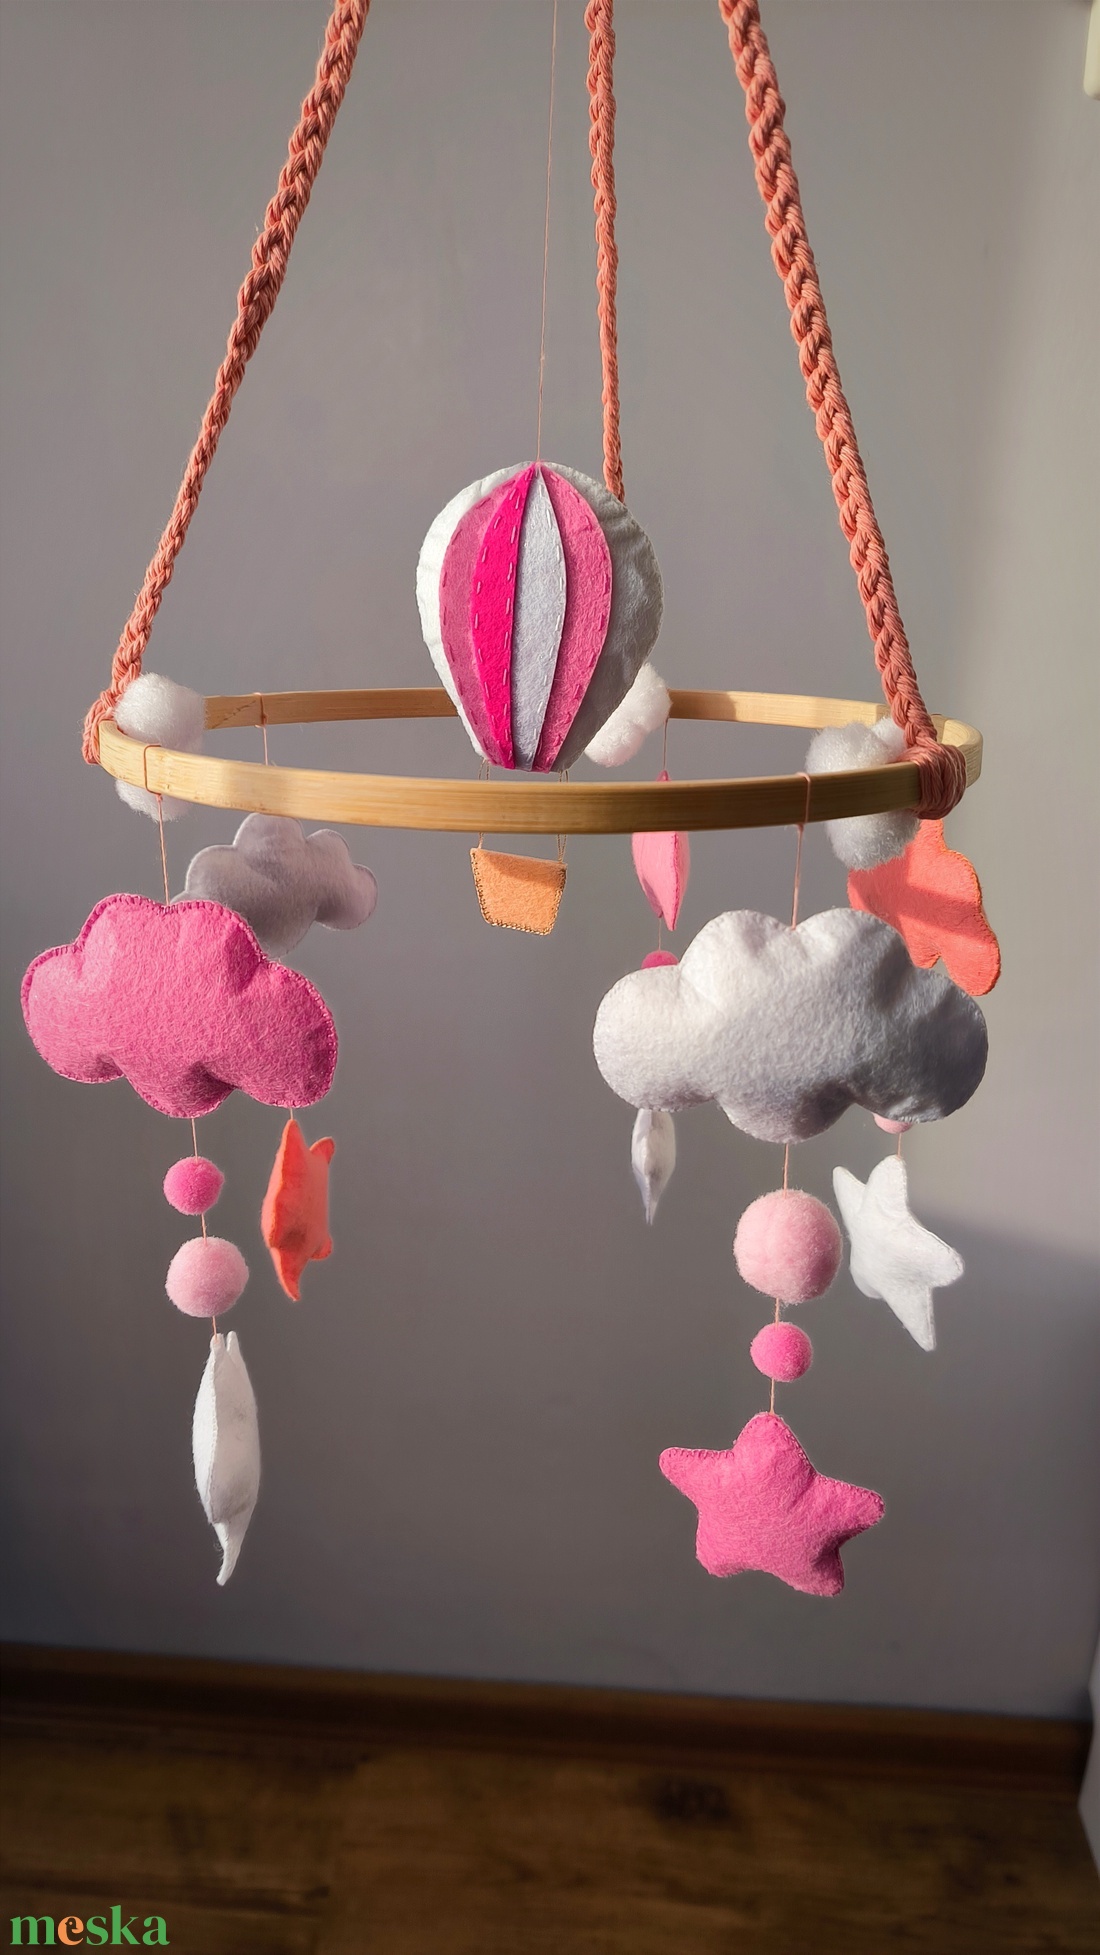 Kislányos kiságyforgó, babaágyforgó felhőkkel, csillagokkal és hőlégballonnal - otthon & lakás - babaszoba, gyerekszoba - babaszoba dekoráció - Meska.hu